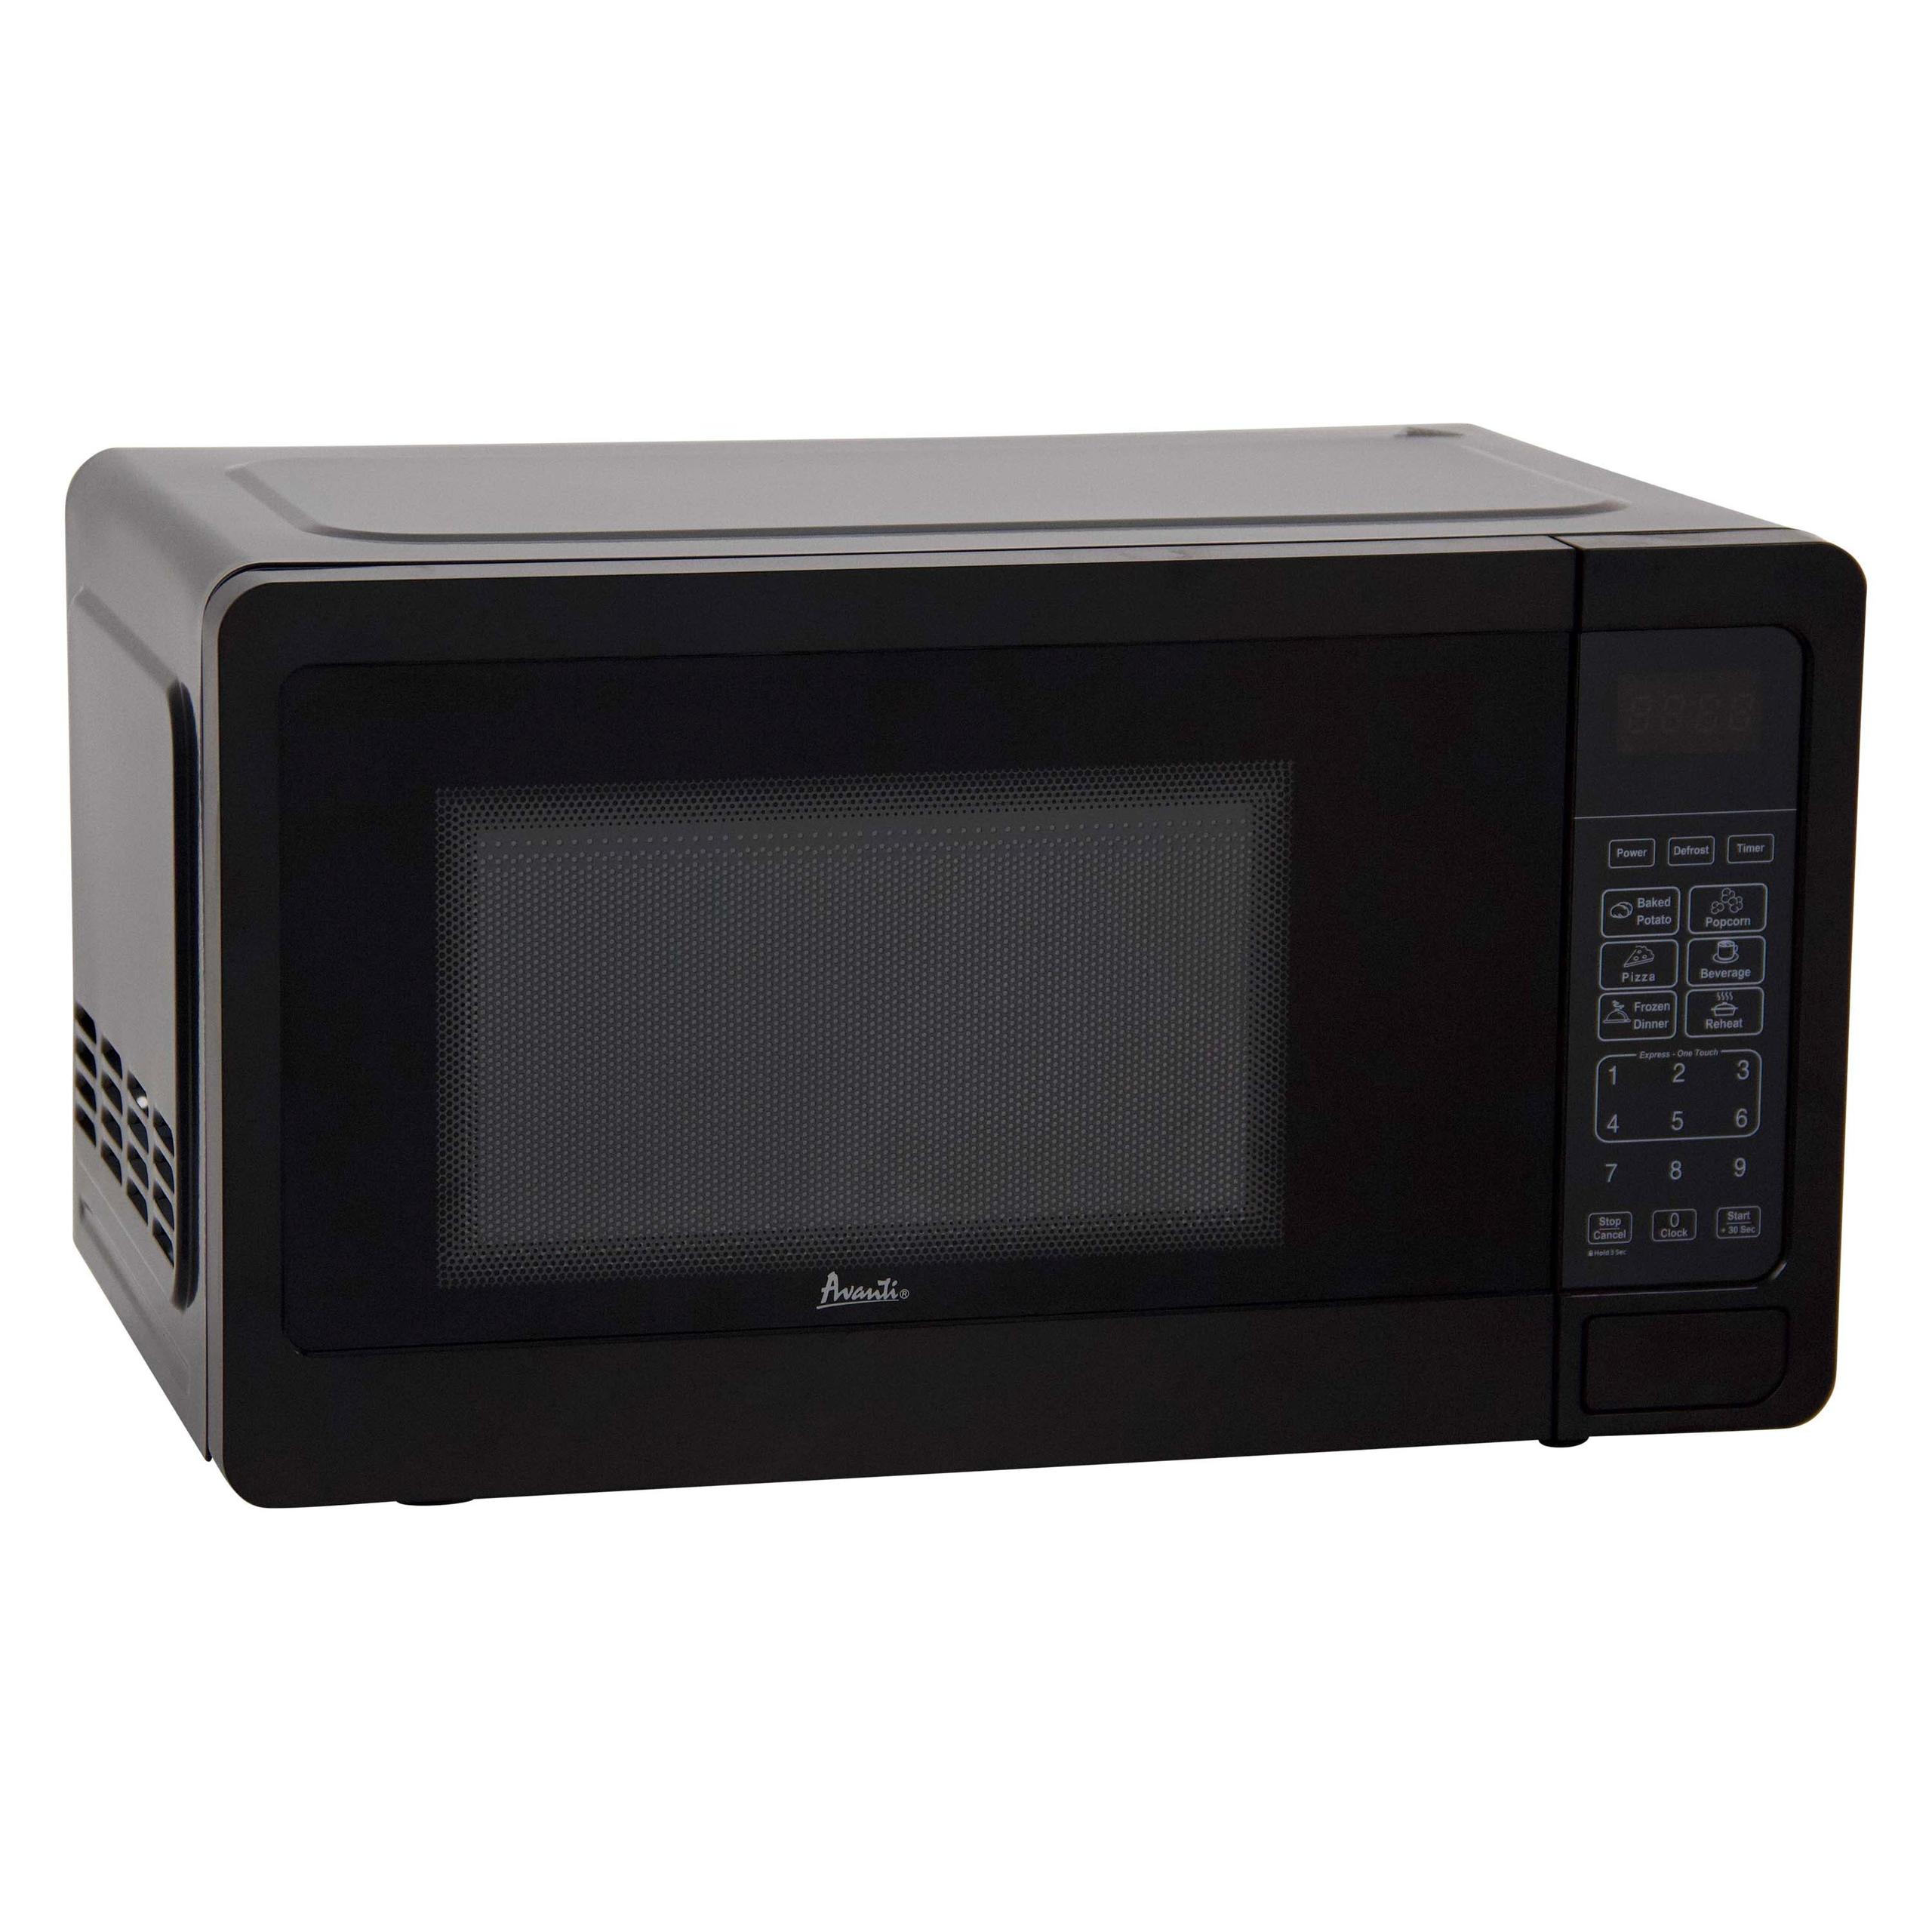 Avanti Countertop Microwave Oven, 0.7 cu. ft. - Black / 0.7 cu. ft.